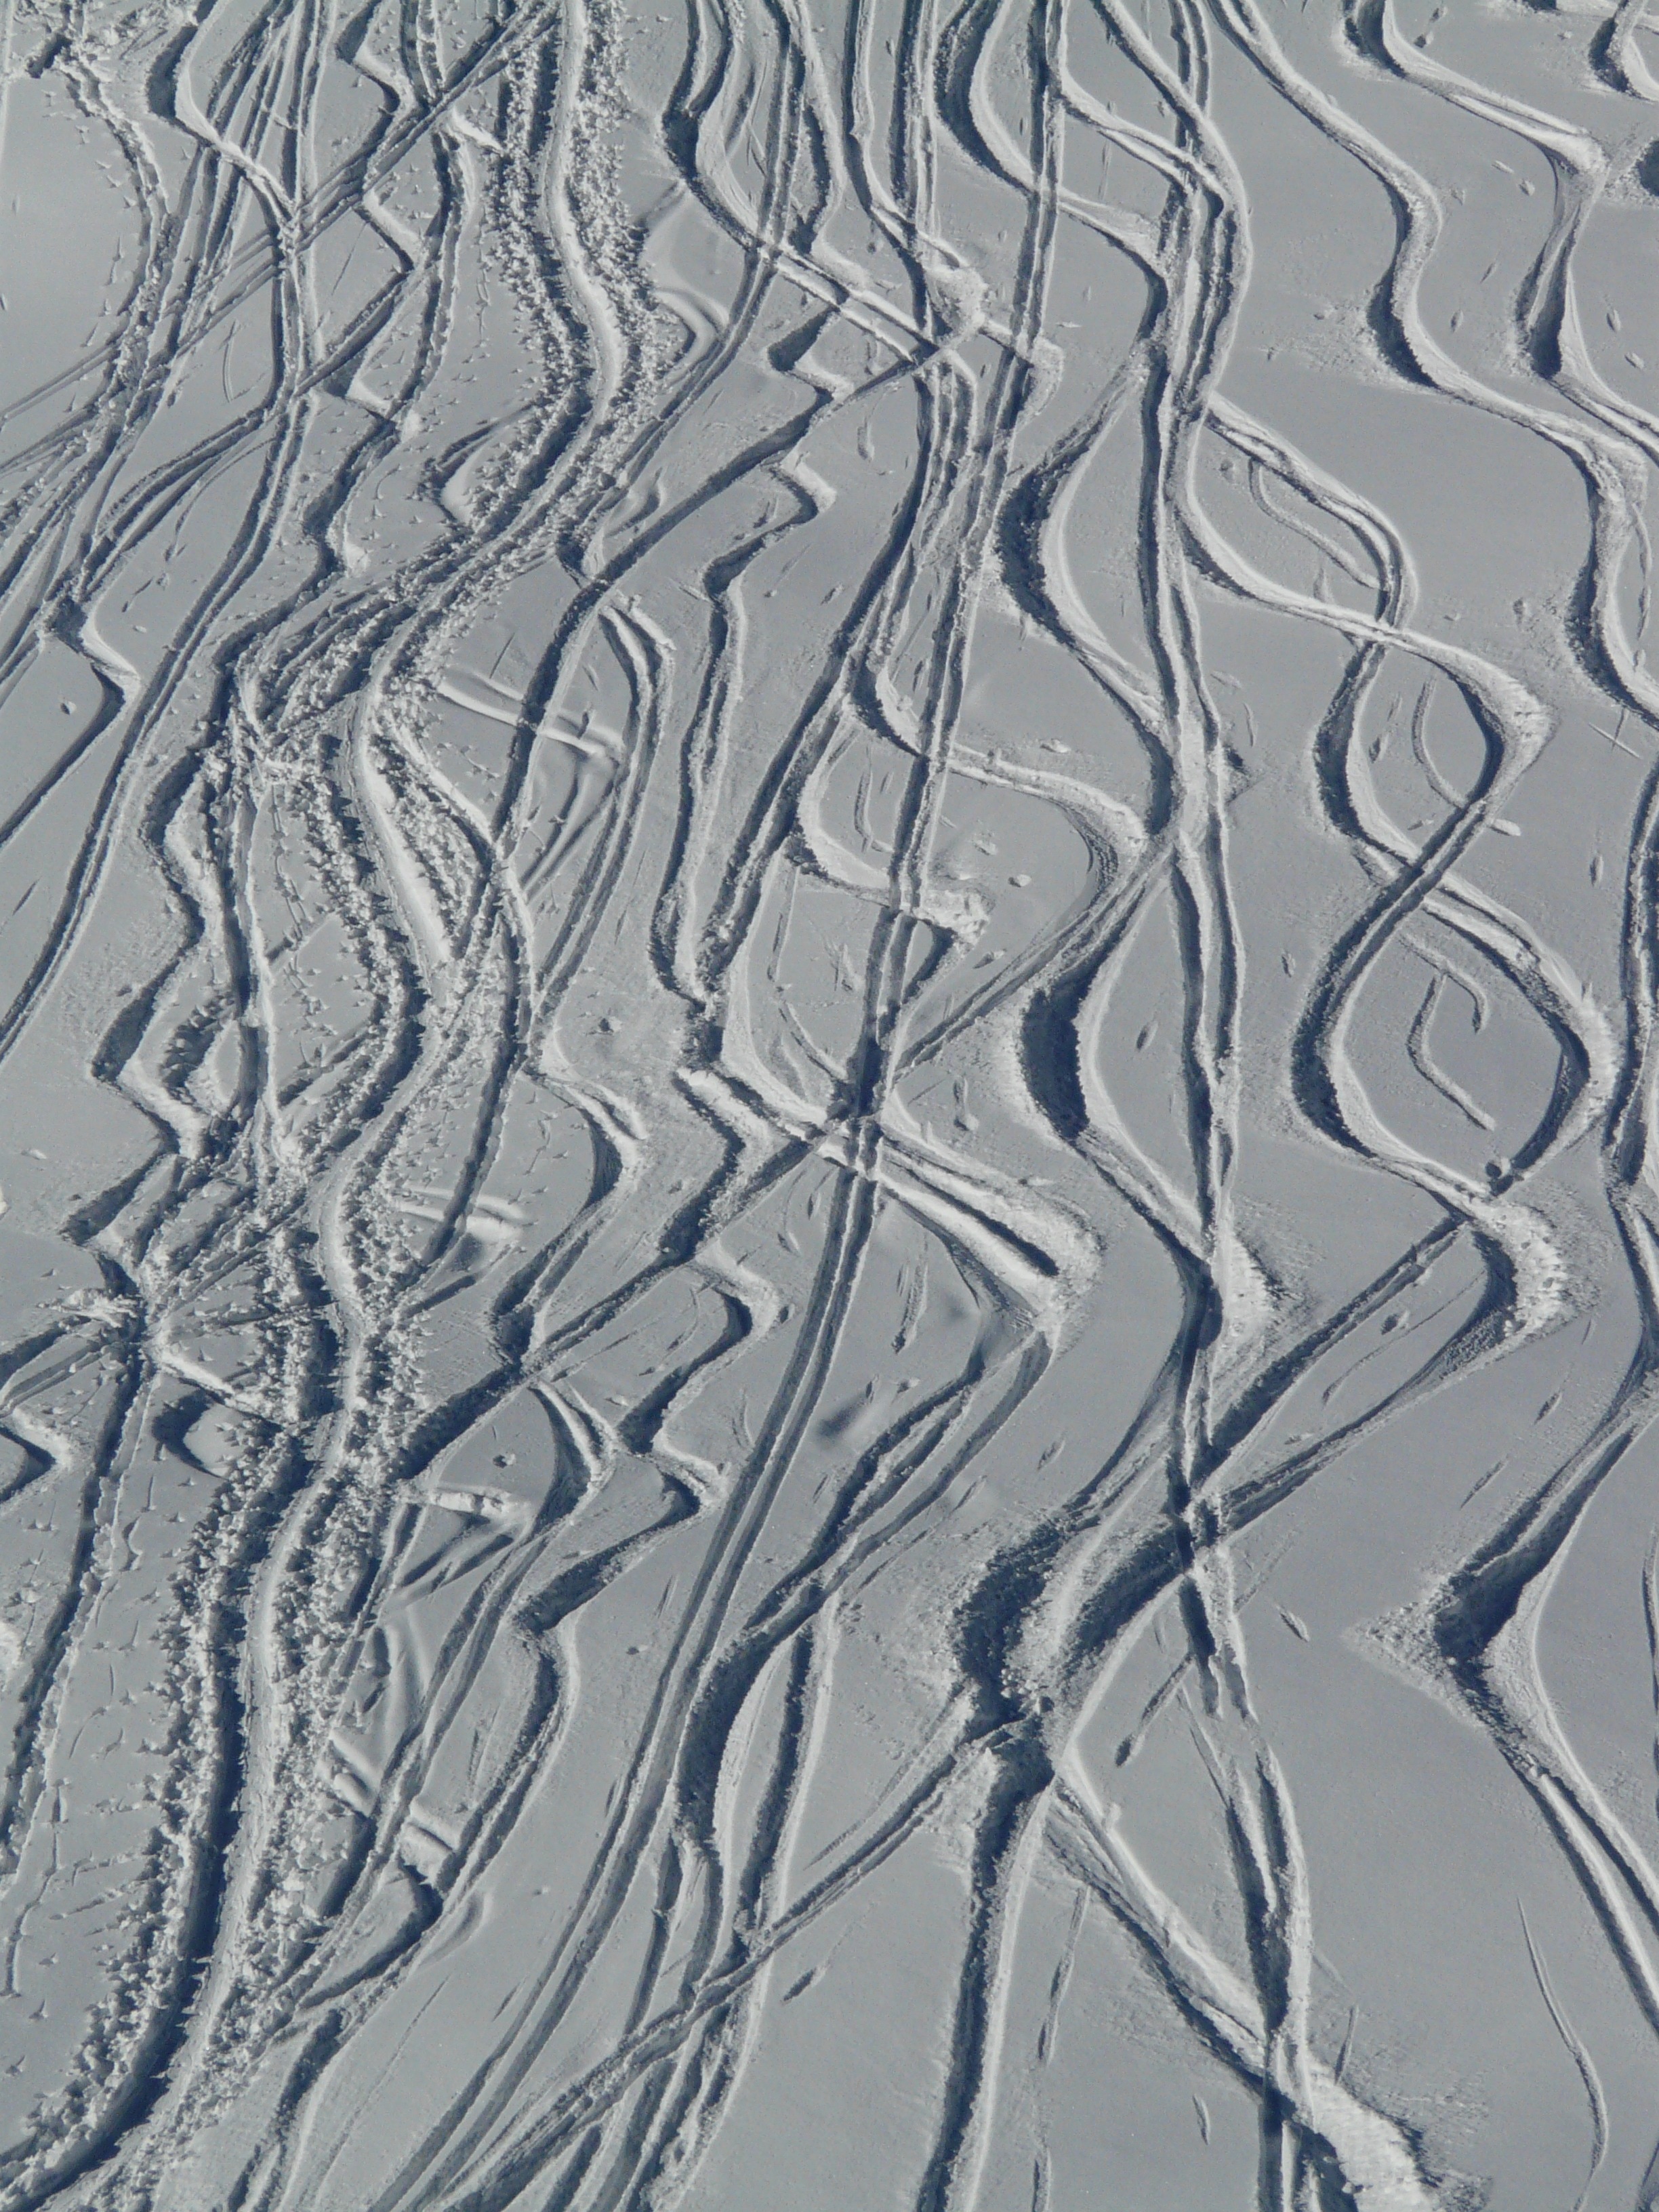 snow ski tracks